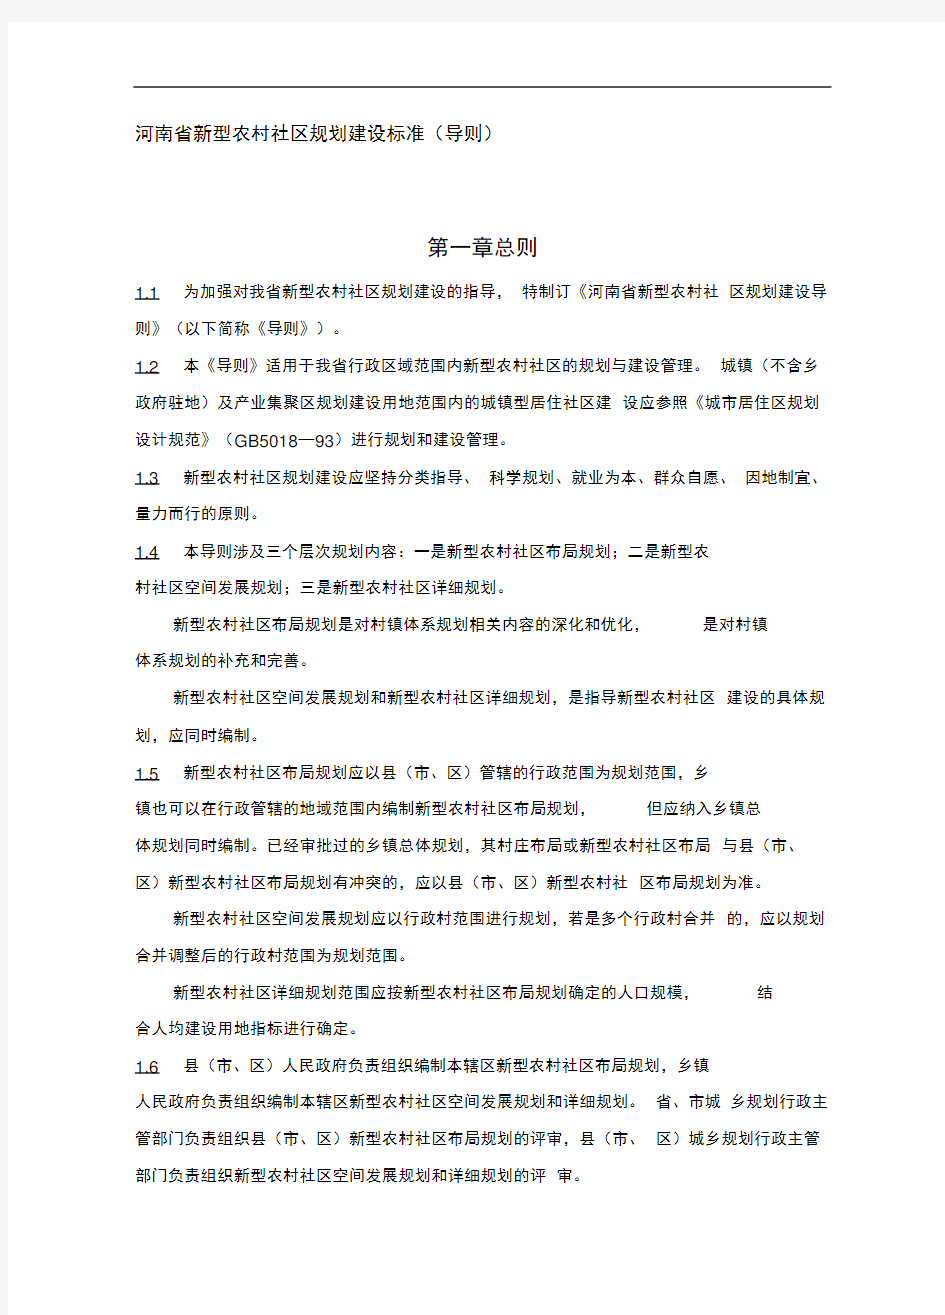 河南省新型农村社区规划建设标准(导则)正式稿